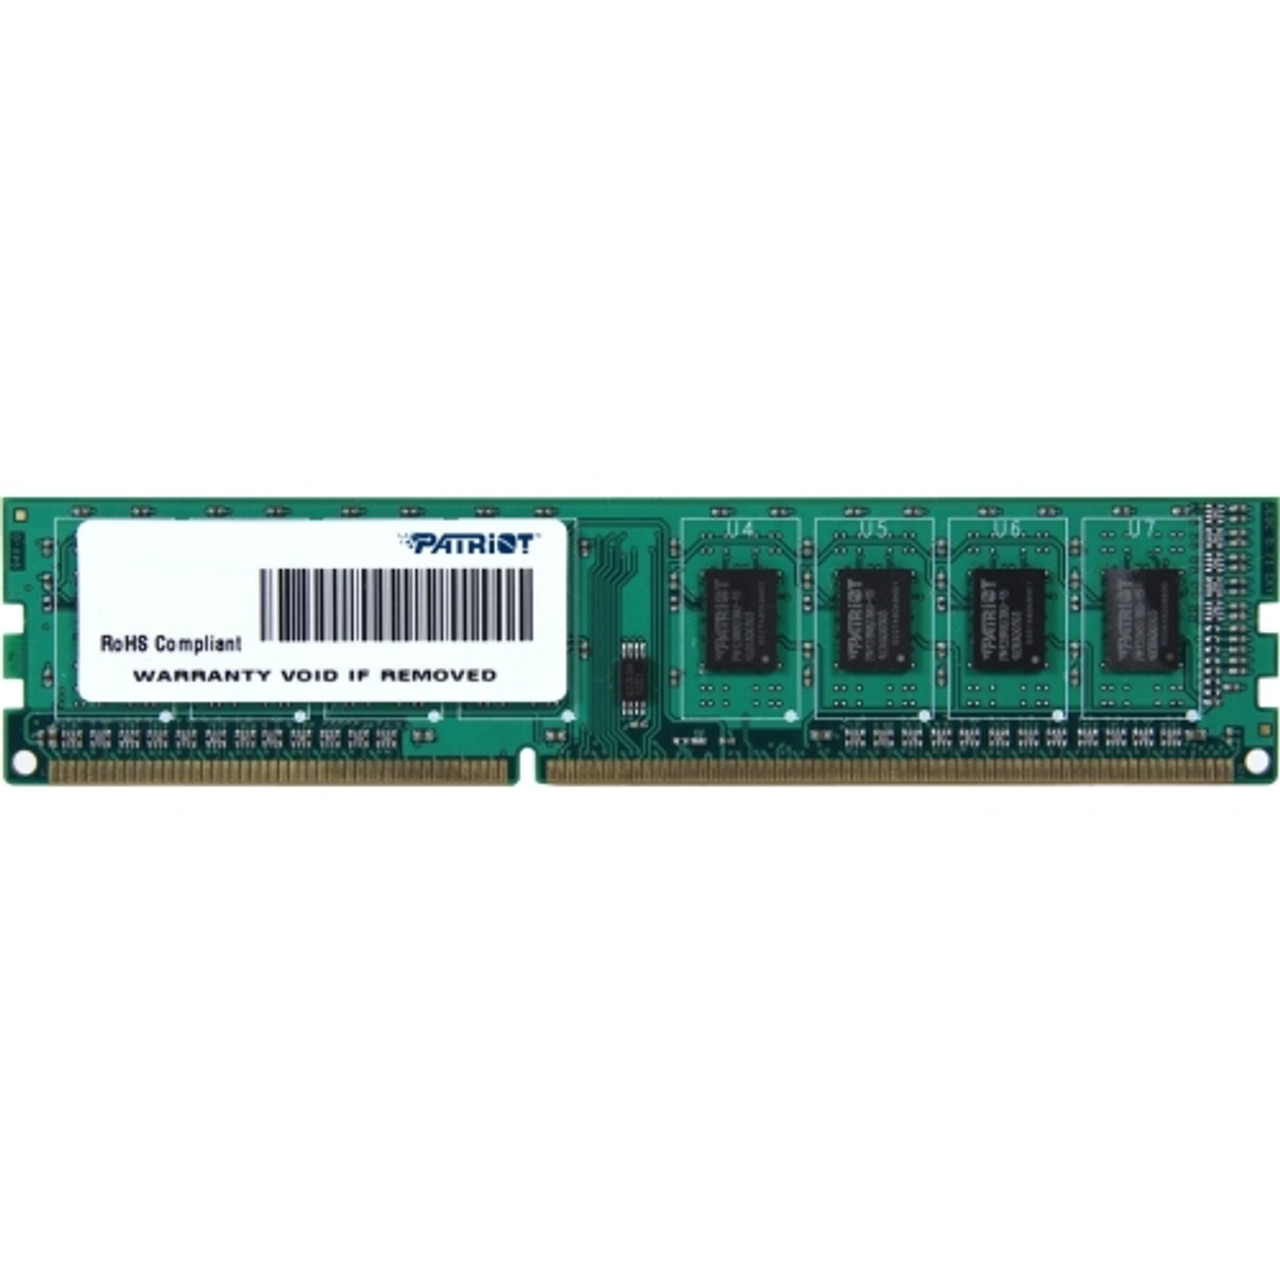 PSD38G1600E2 Patriot Signature Line 8GB PC3-12800 DDR3-1600MHz non-ECC Unbuffered CL11 240-Pin DIMM Memory Module